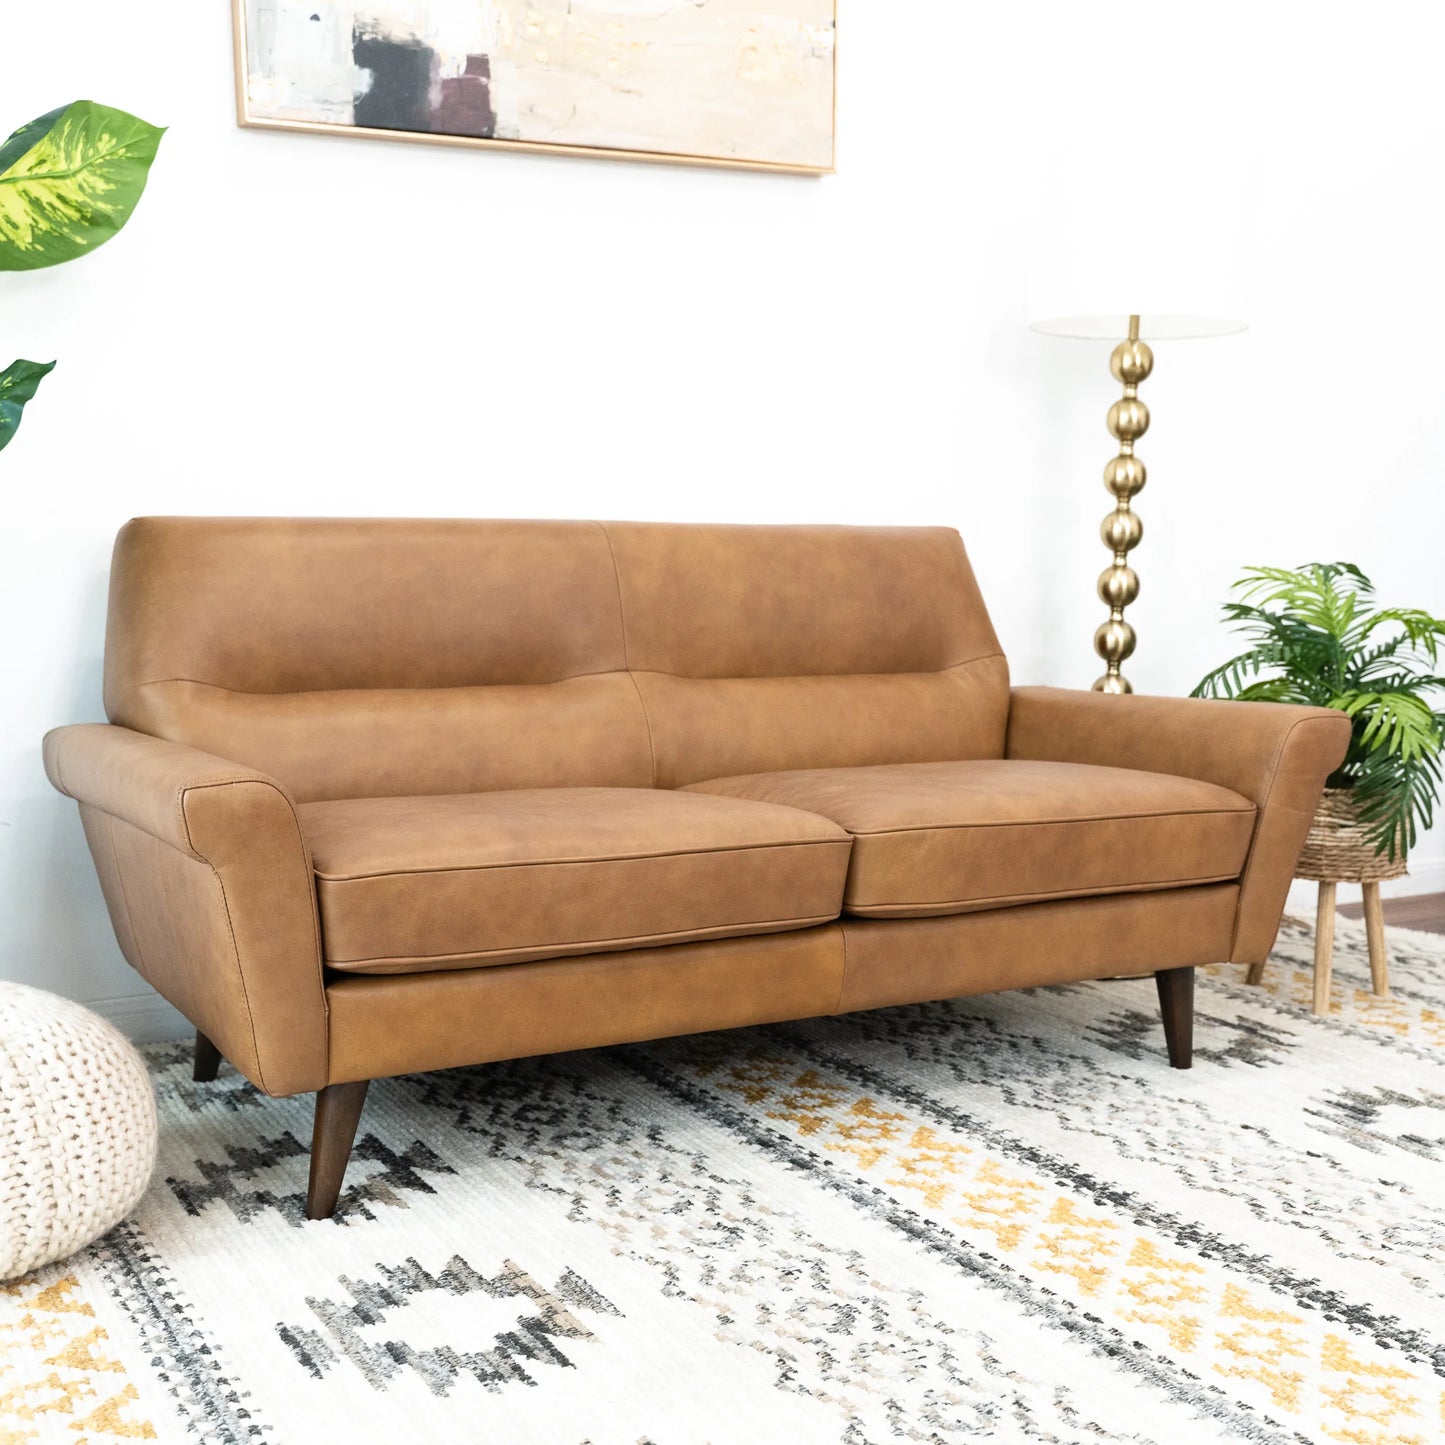 Pena Leather Sofa (Tan)